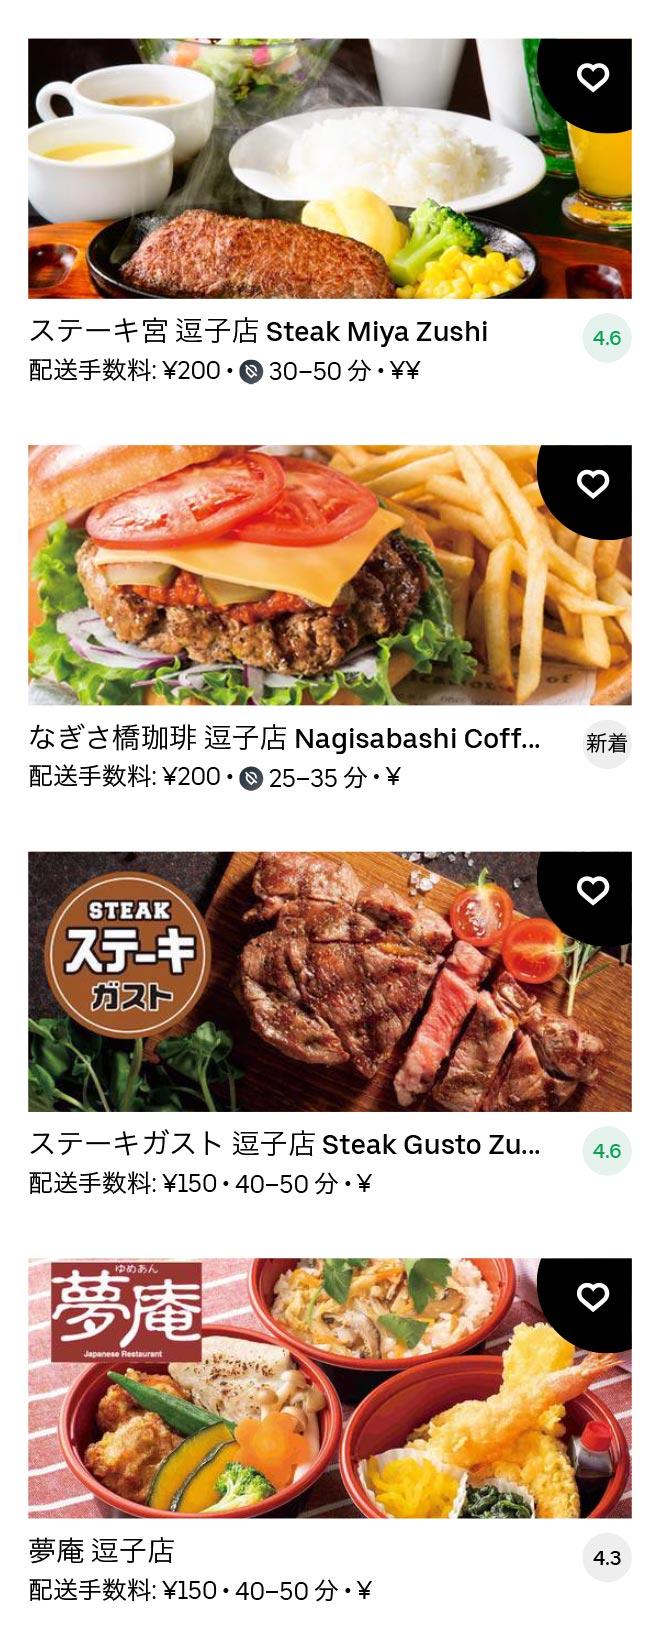 Zushi menu 2012 03